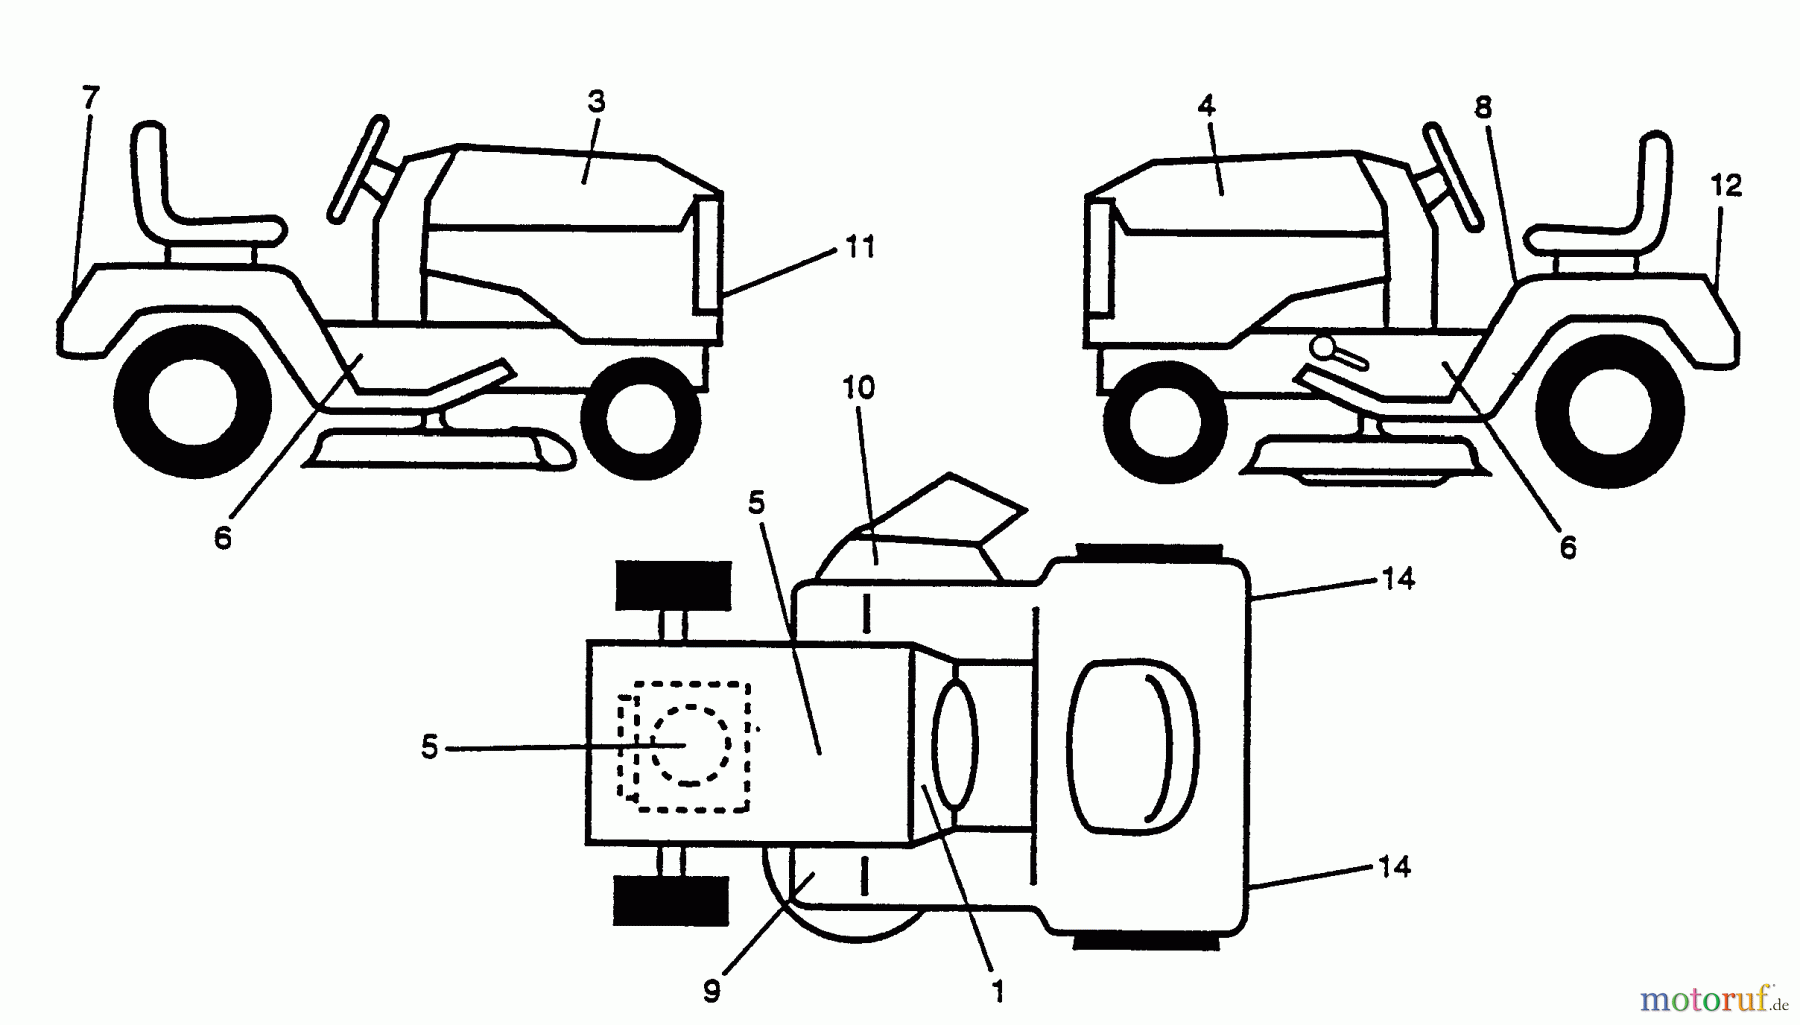  Husqvarna Rasen und Garten Traktoren YT 160 (954000582) (HU1642A) - Husqvarna Yard Tractor (1993-01 & After) Decals